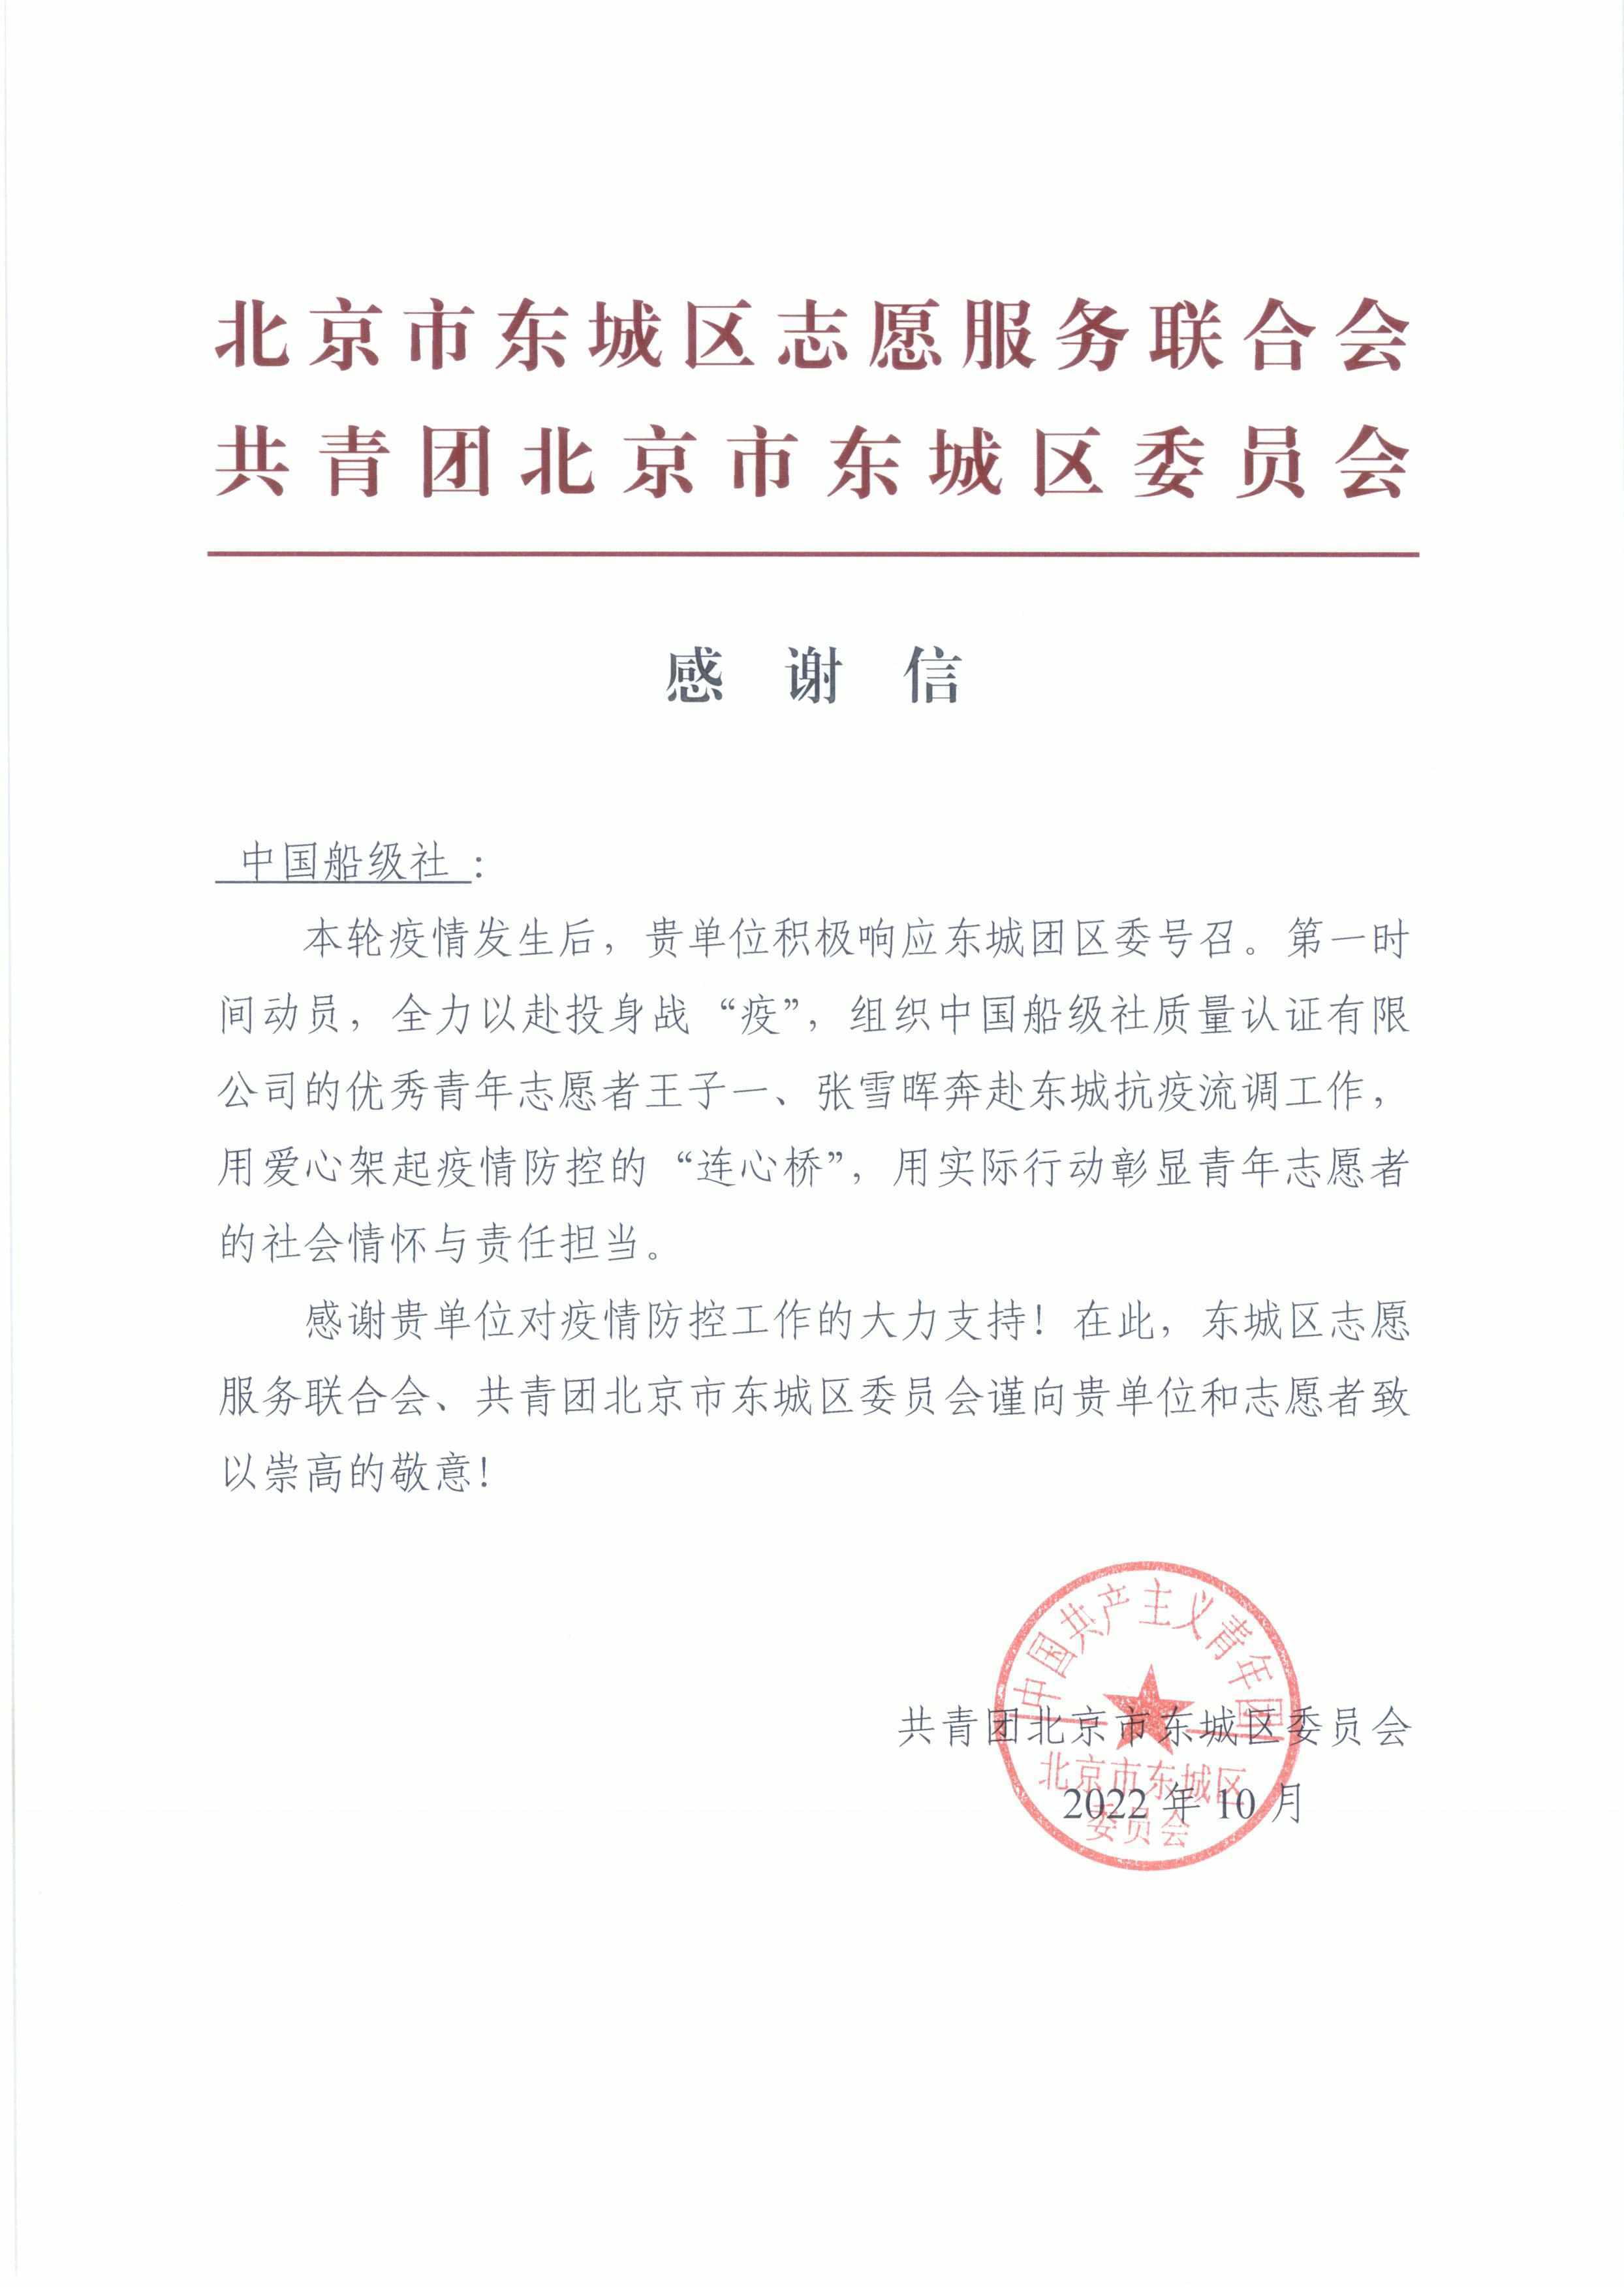 20221104-张雪晖-公司收到共青团北京市东城区委员会感谢信.jpg